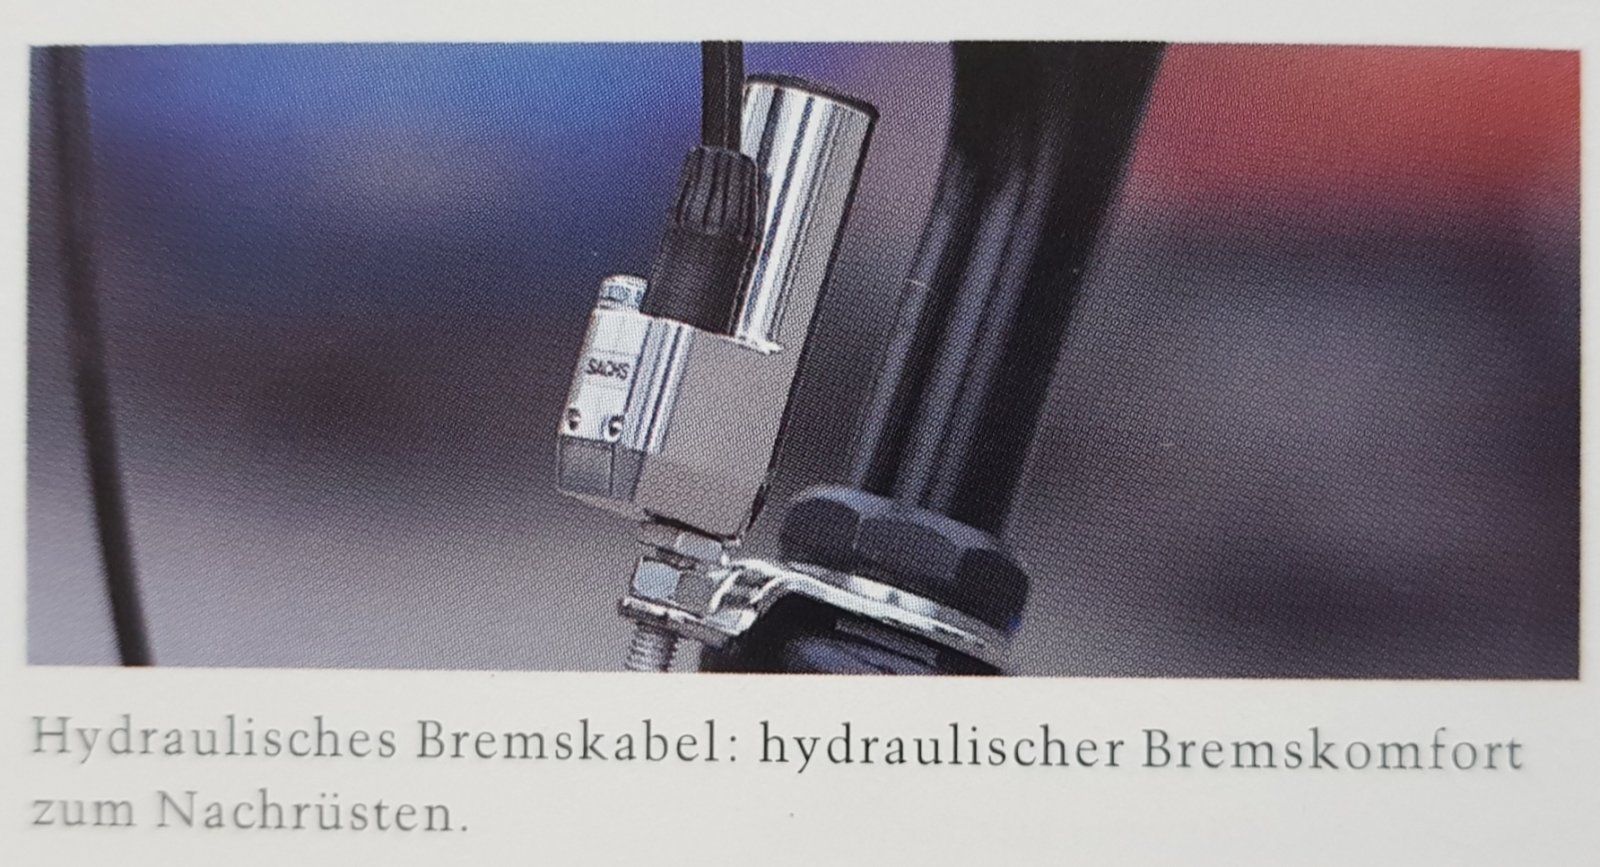 Sachs hydraulisches Bremskabel aus Katalog 1994.jpg